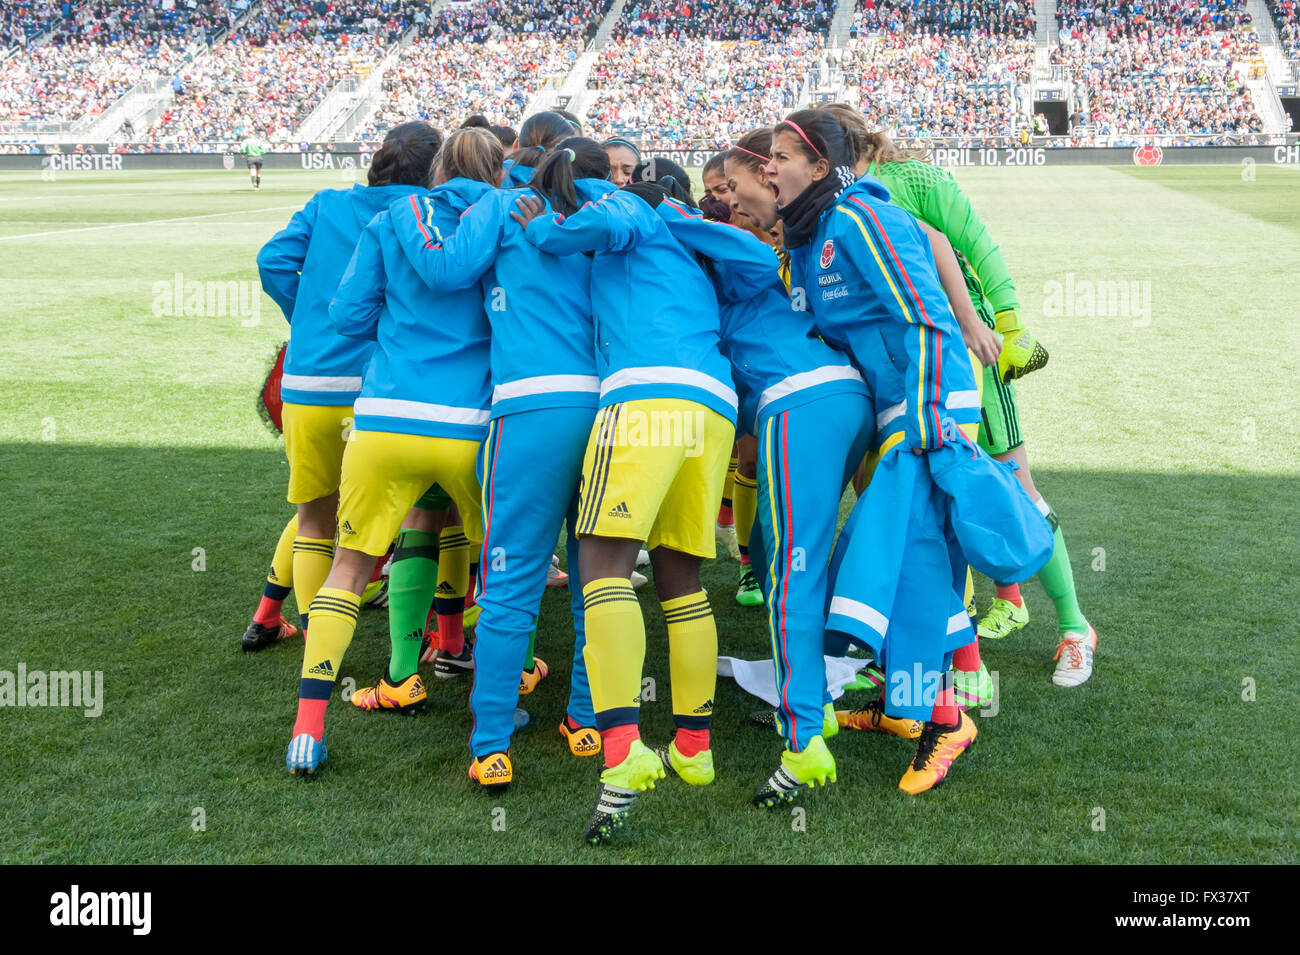 Femmes football / soccer - Columbia's Women's Caucus de l'équipe nationale avant le jeu © Don Mennig/Alamy Live News Banque D'Images